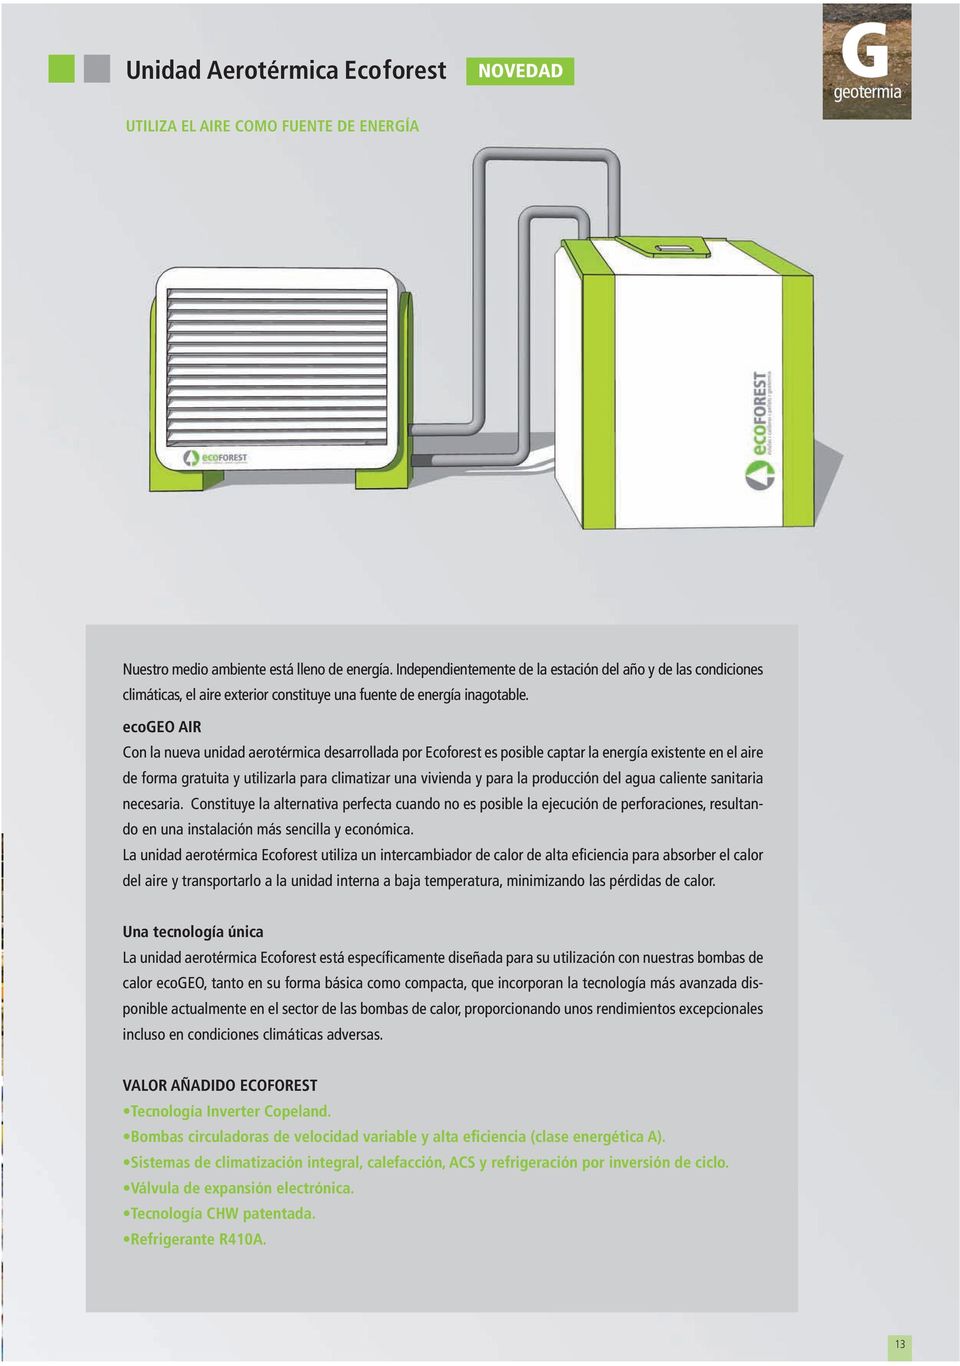 ecogeo AIR Con la nueva unidad aerotérmica desarrollada por Ecoforest es posible captar la energía existente en el aire de forma gratuita y utilizarla para climatizar una vivienda y para la